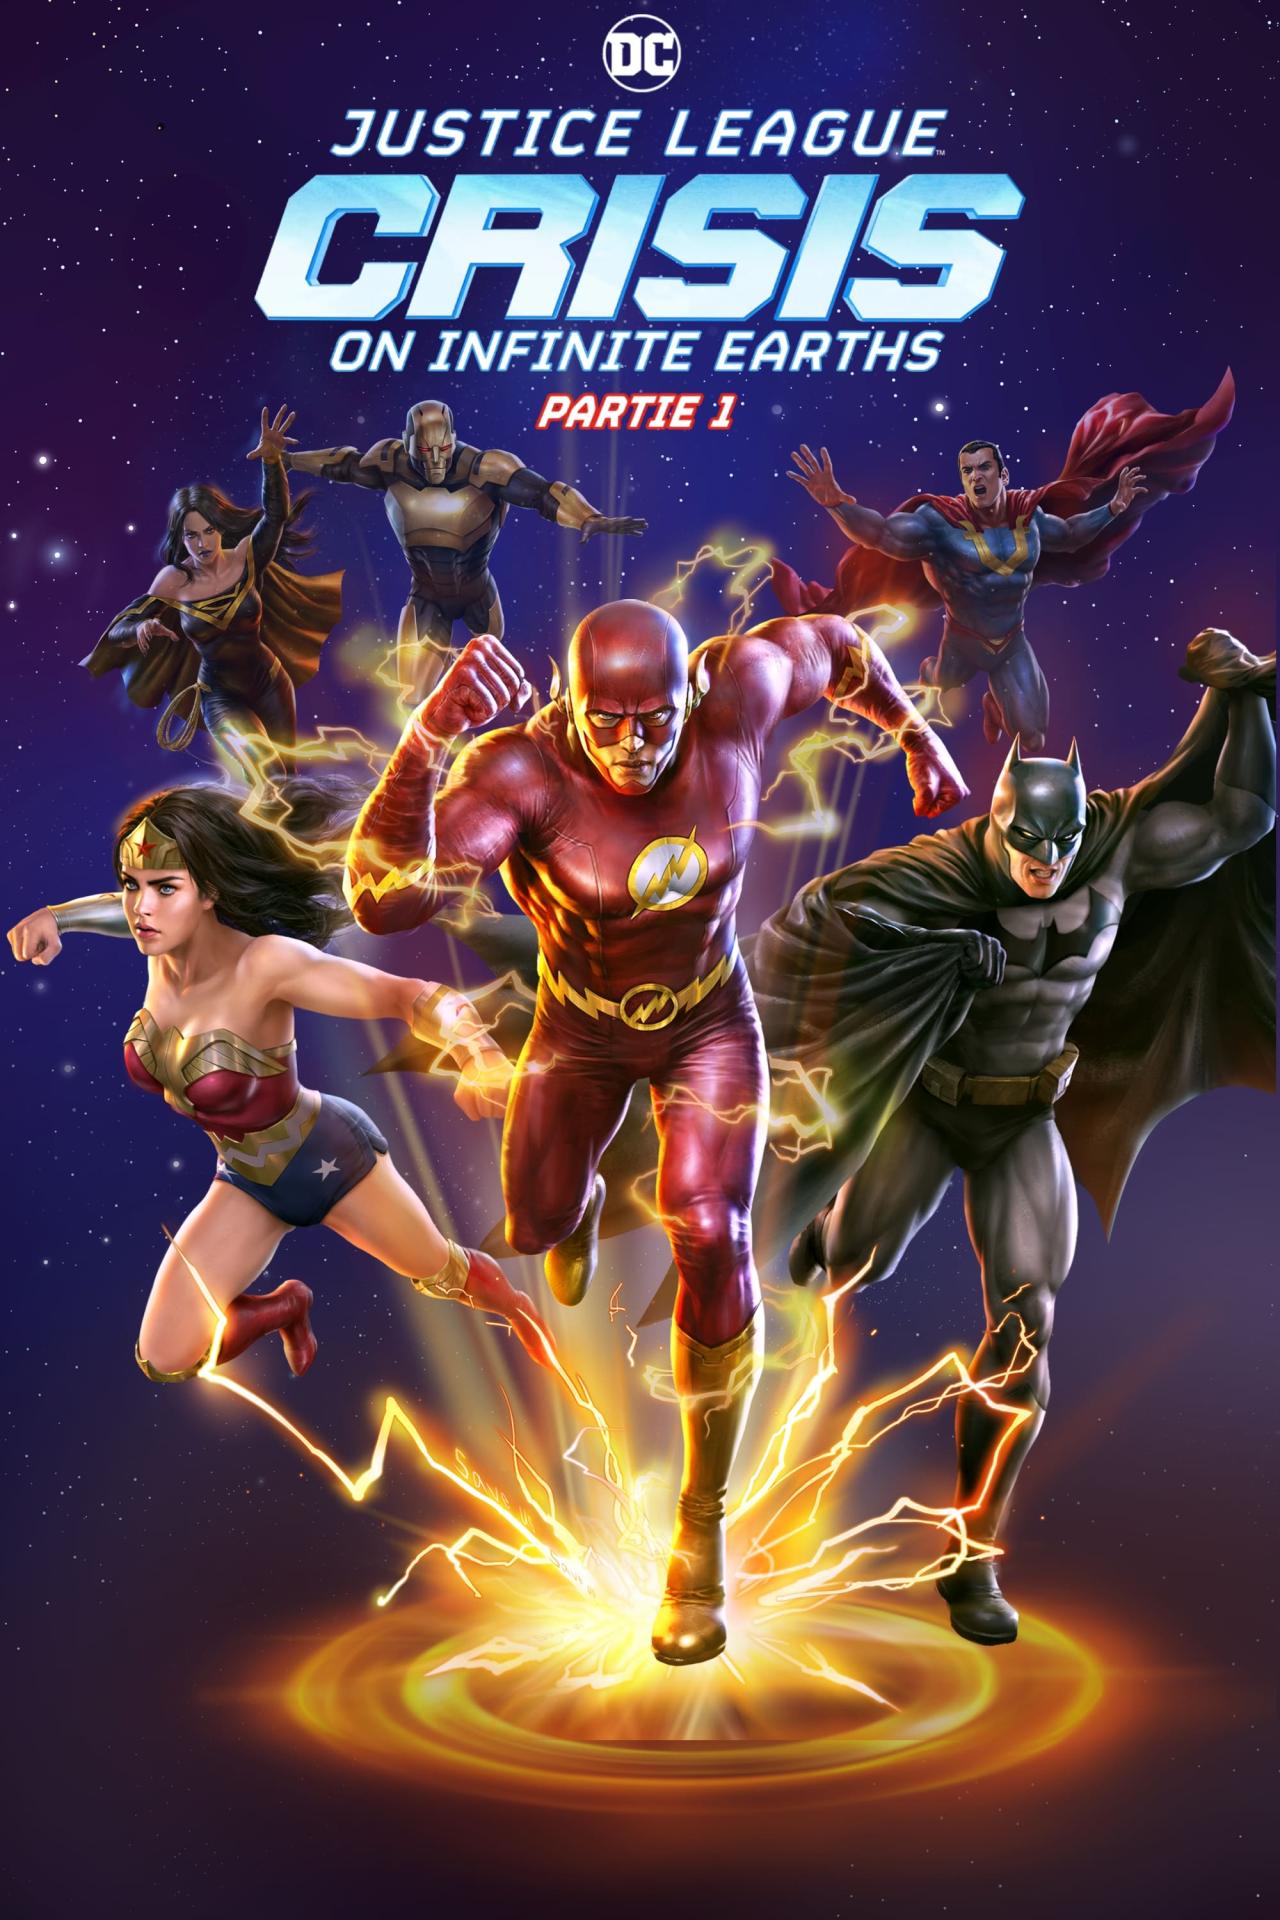 Justice League : Crisis on Infinite Earths Partie 2 est-il disponible sur Netflix ou autre ?